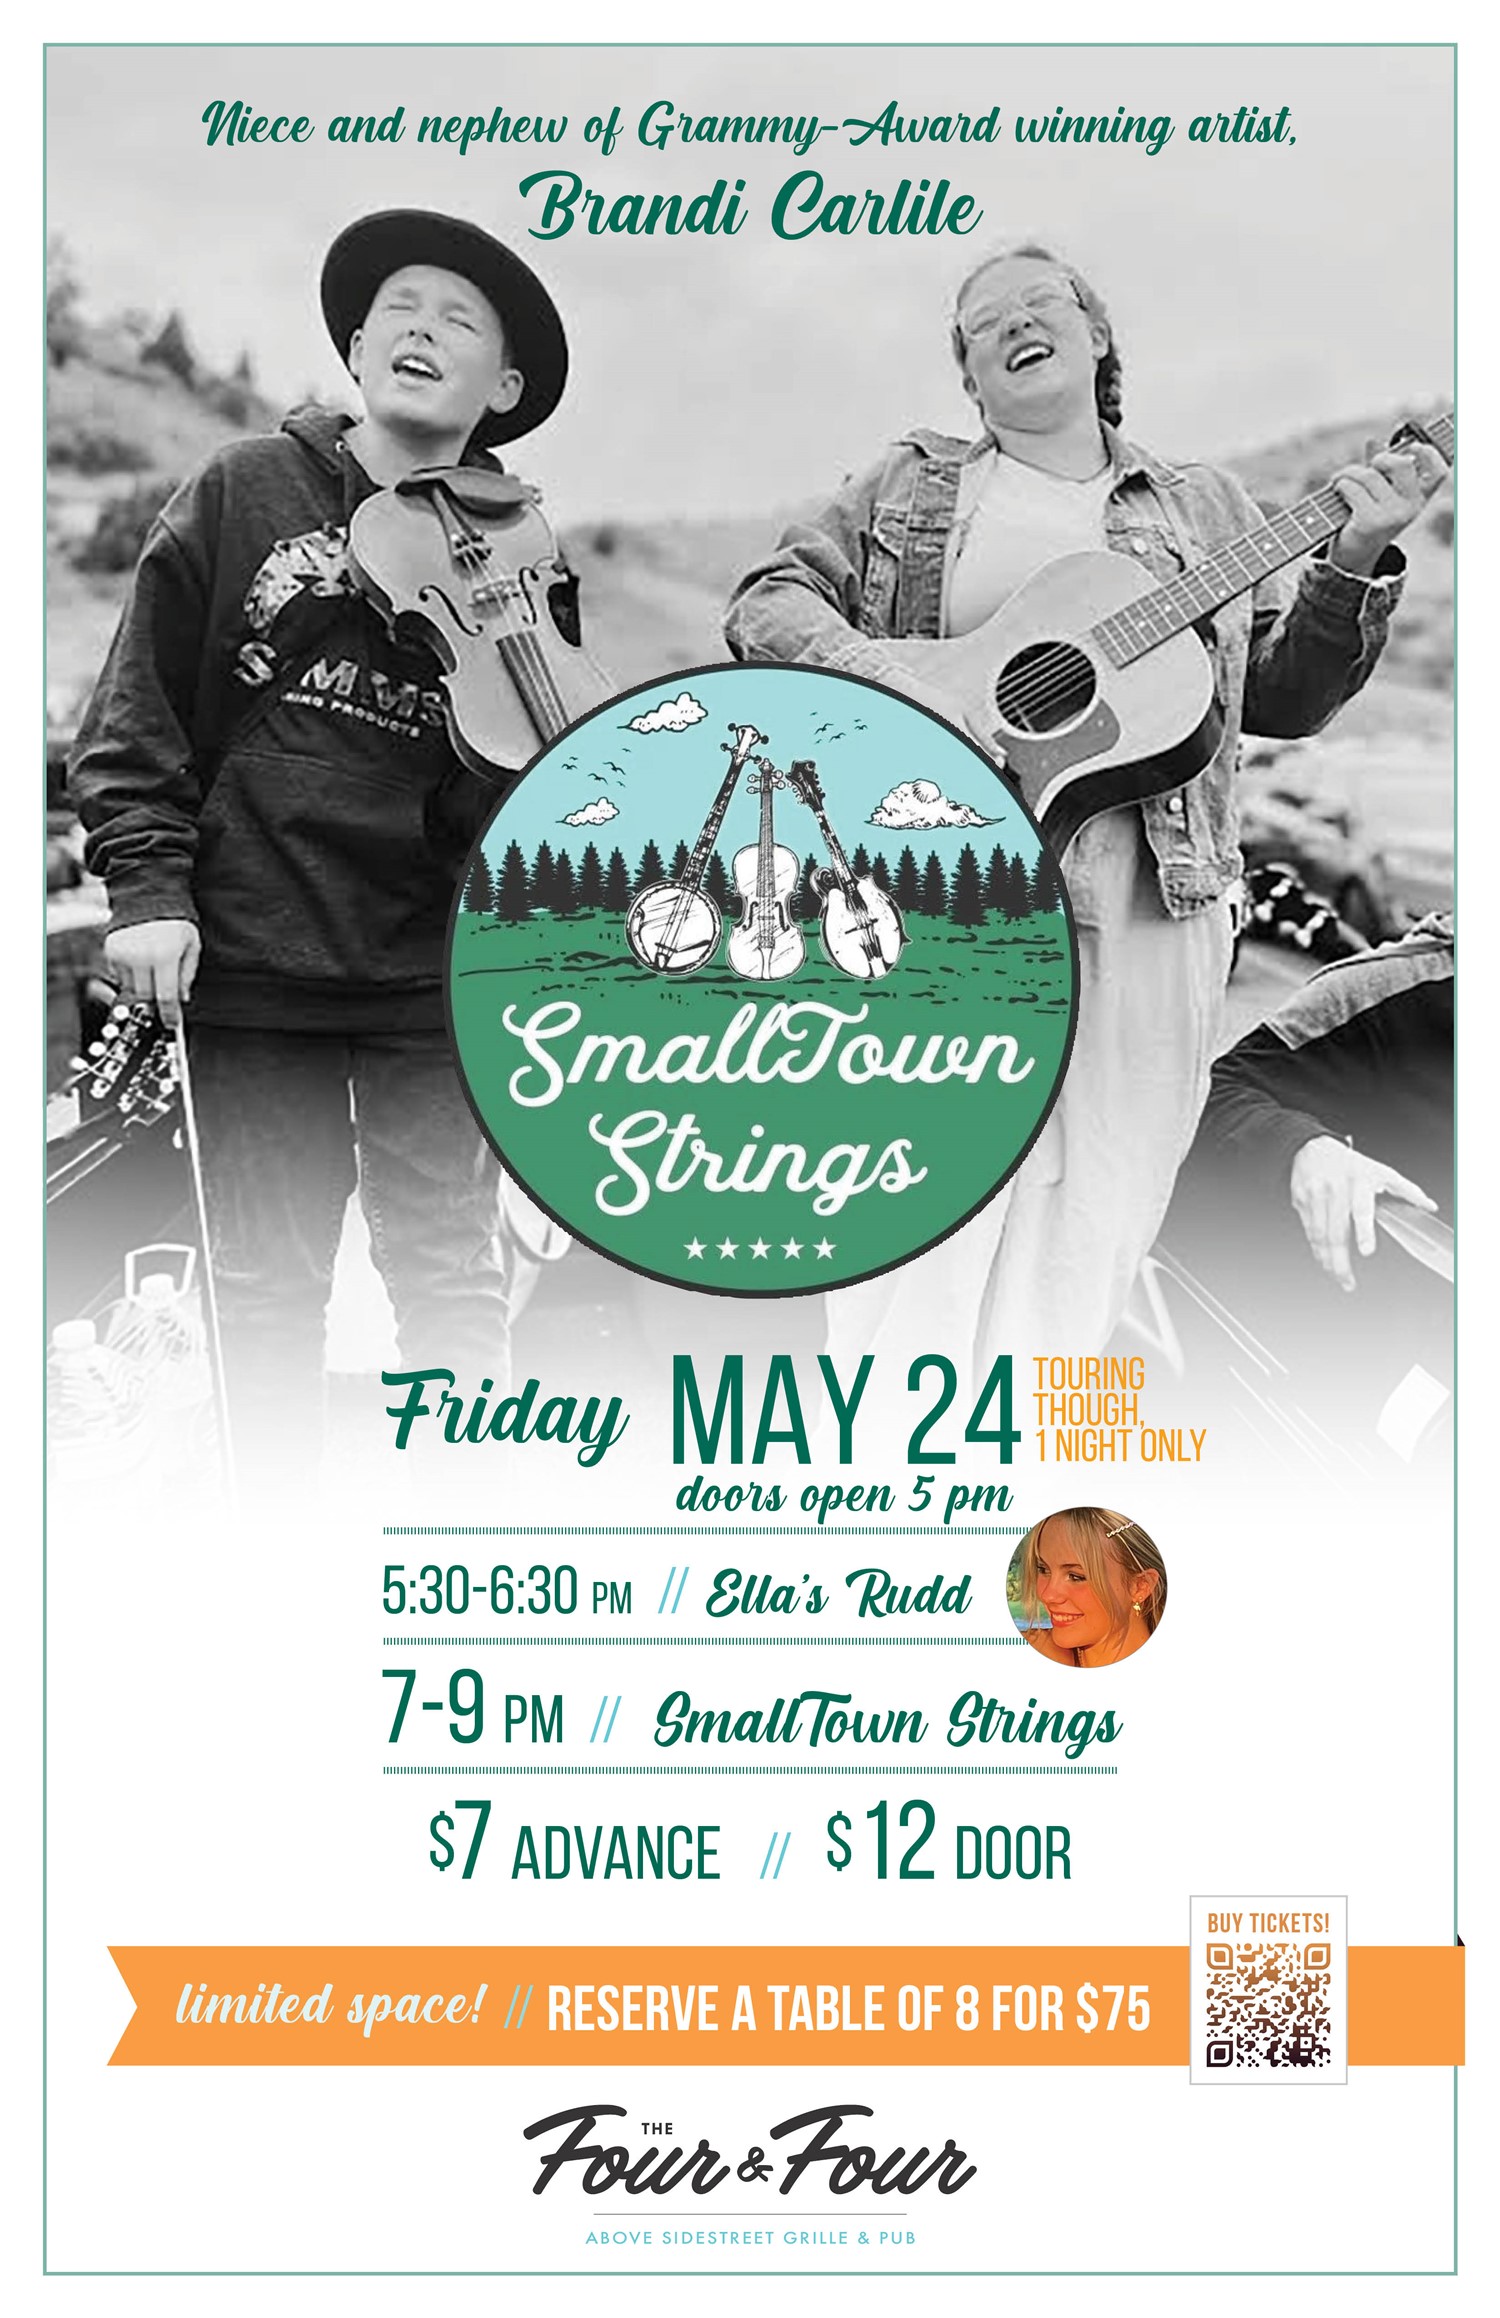 SmallTown Strings  on mai 24, 17:30@The Four and Four, above Sidestreet Grille & Bar - Achetez des billets et obtenez des informations surSidestreet Live / Four and Four 